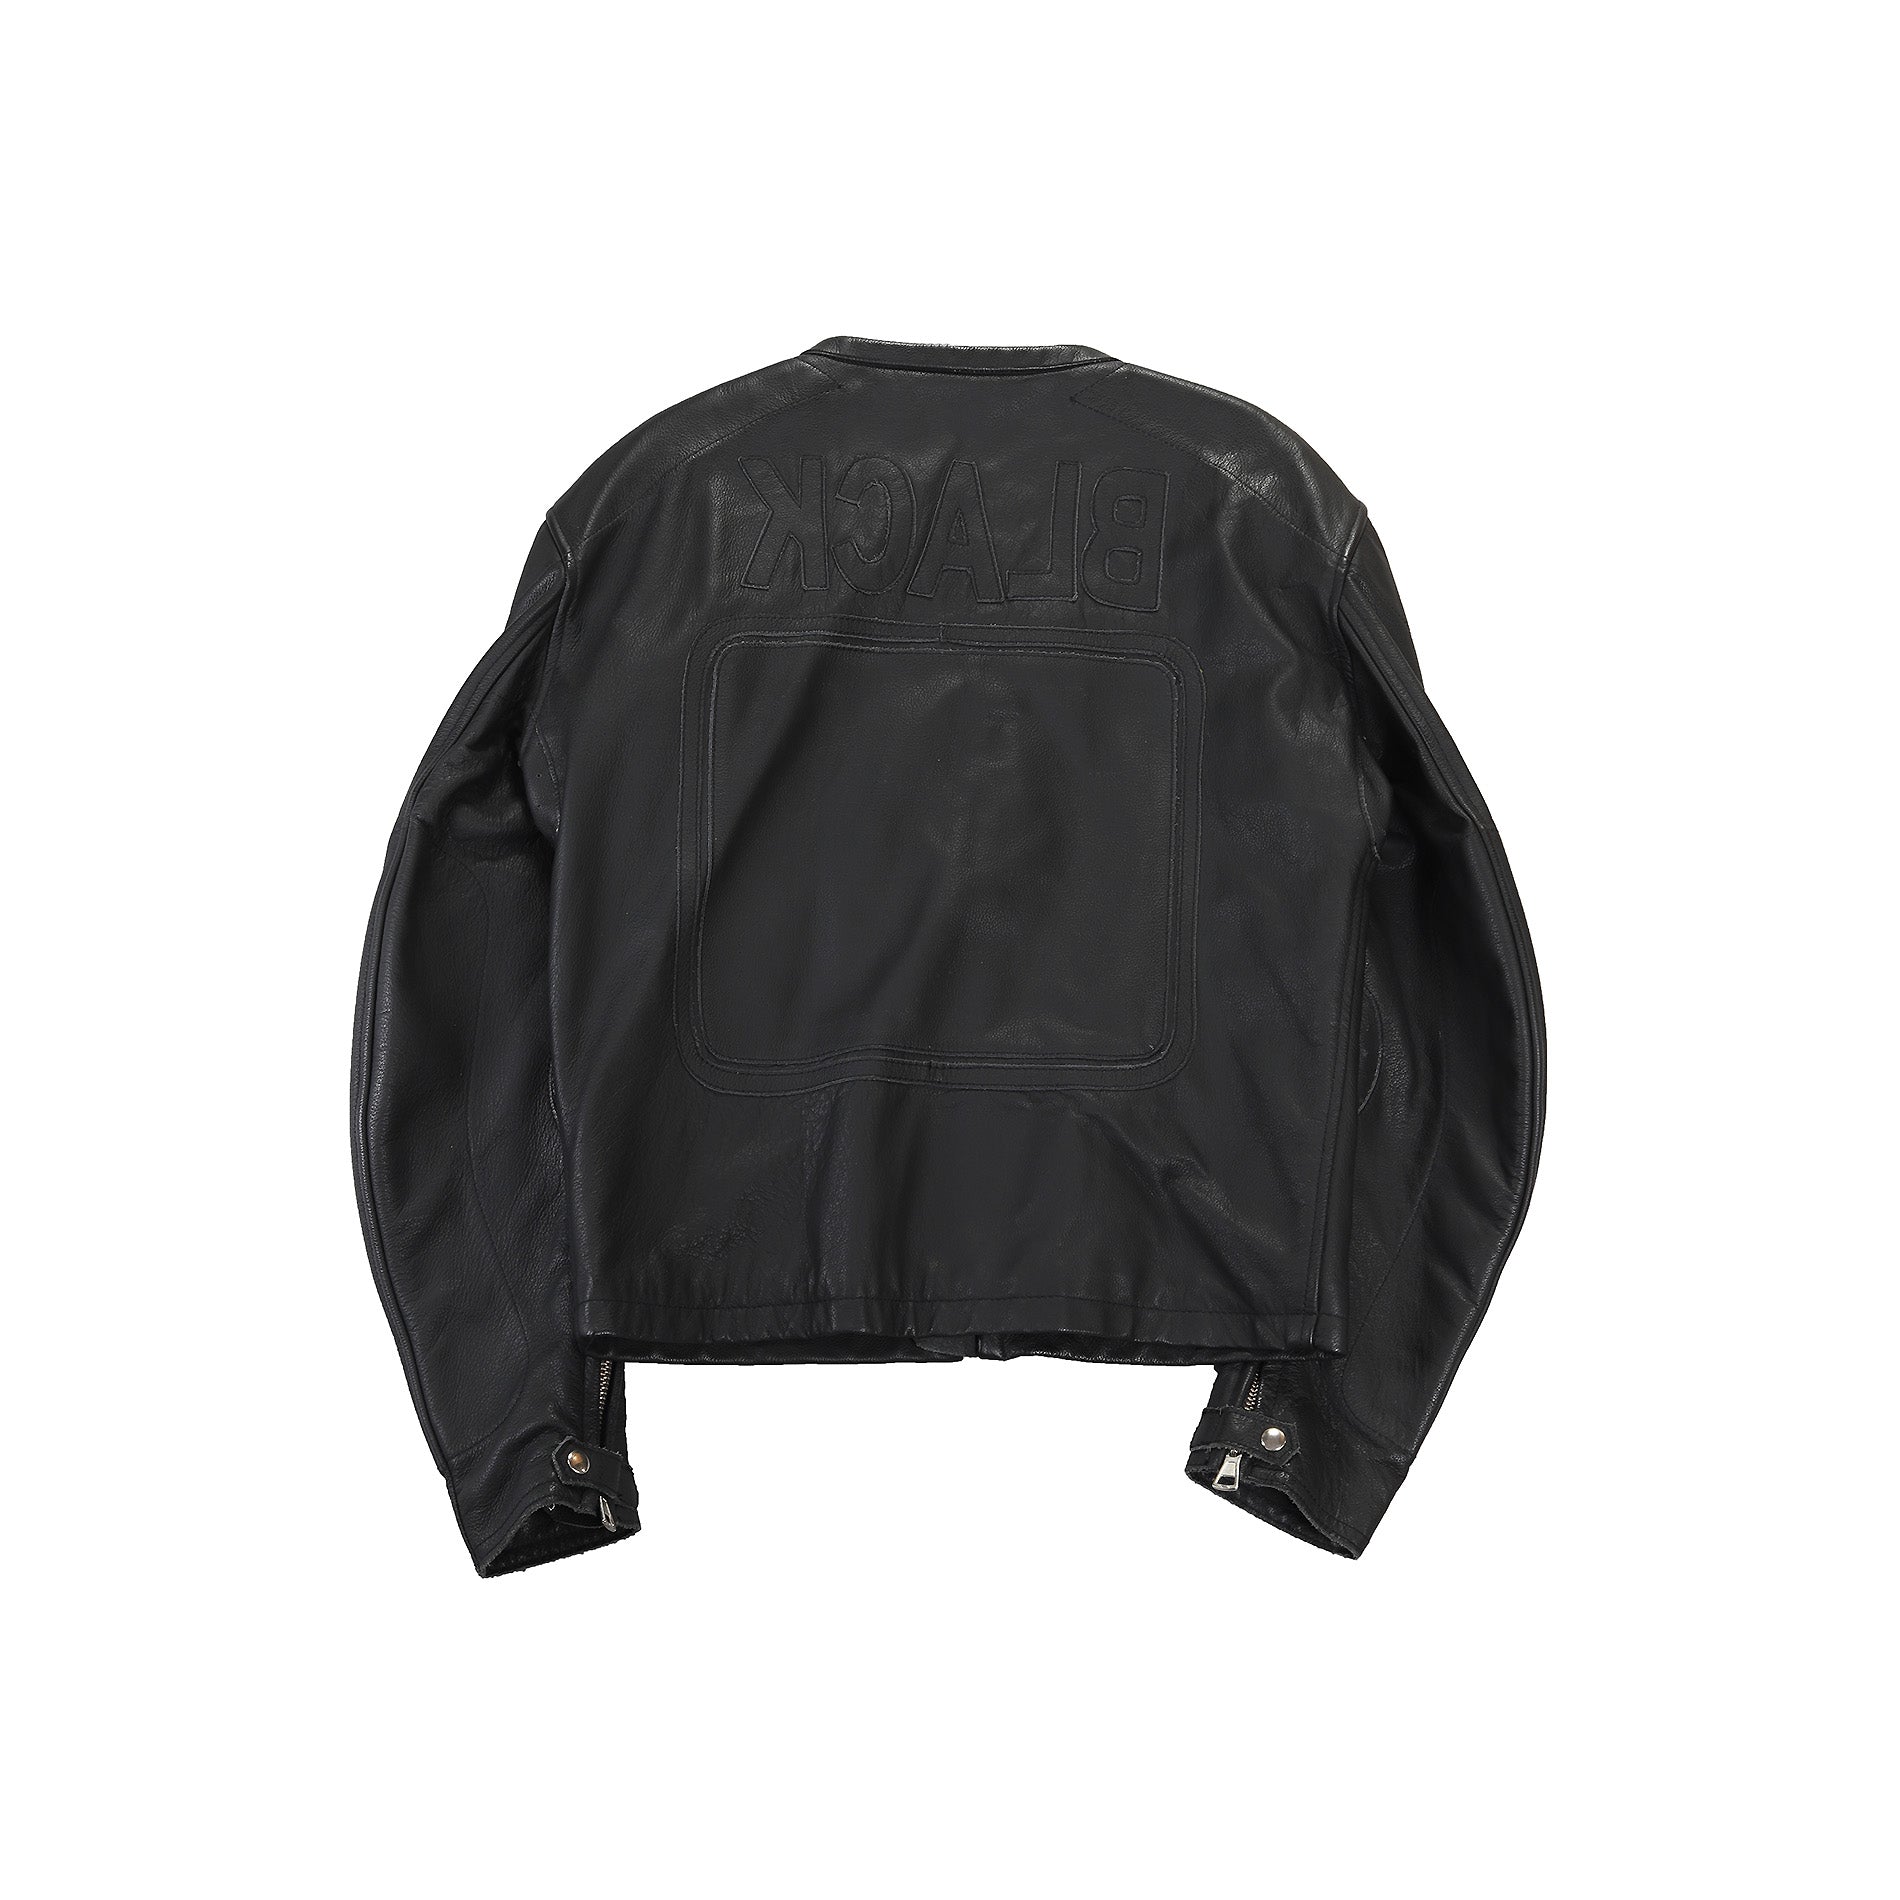 Maison Martin Margiela SS2002 BLACK Patched Leather Jacket